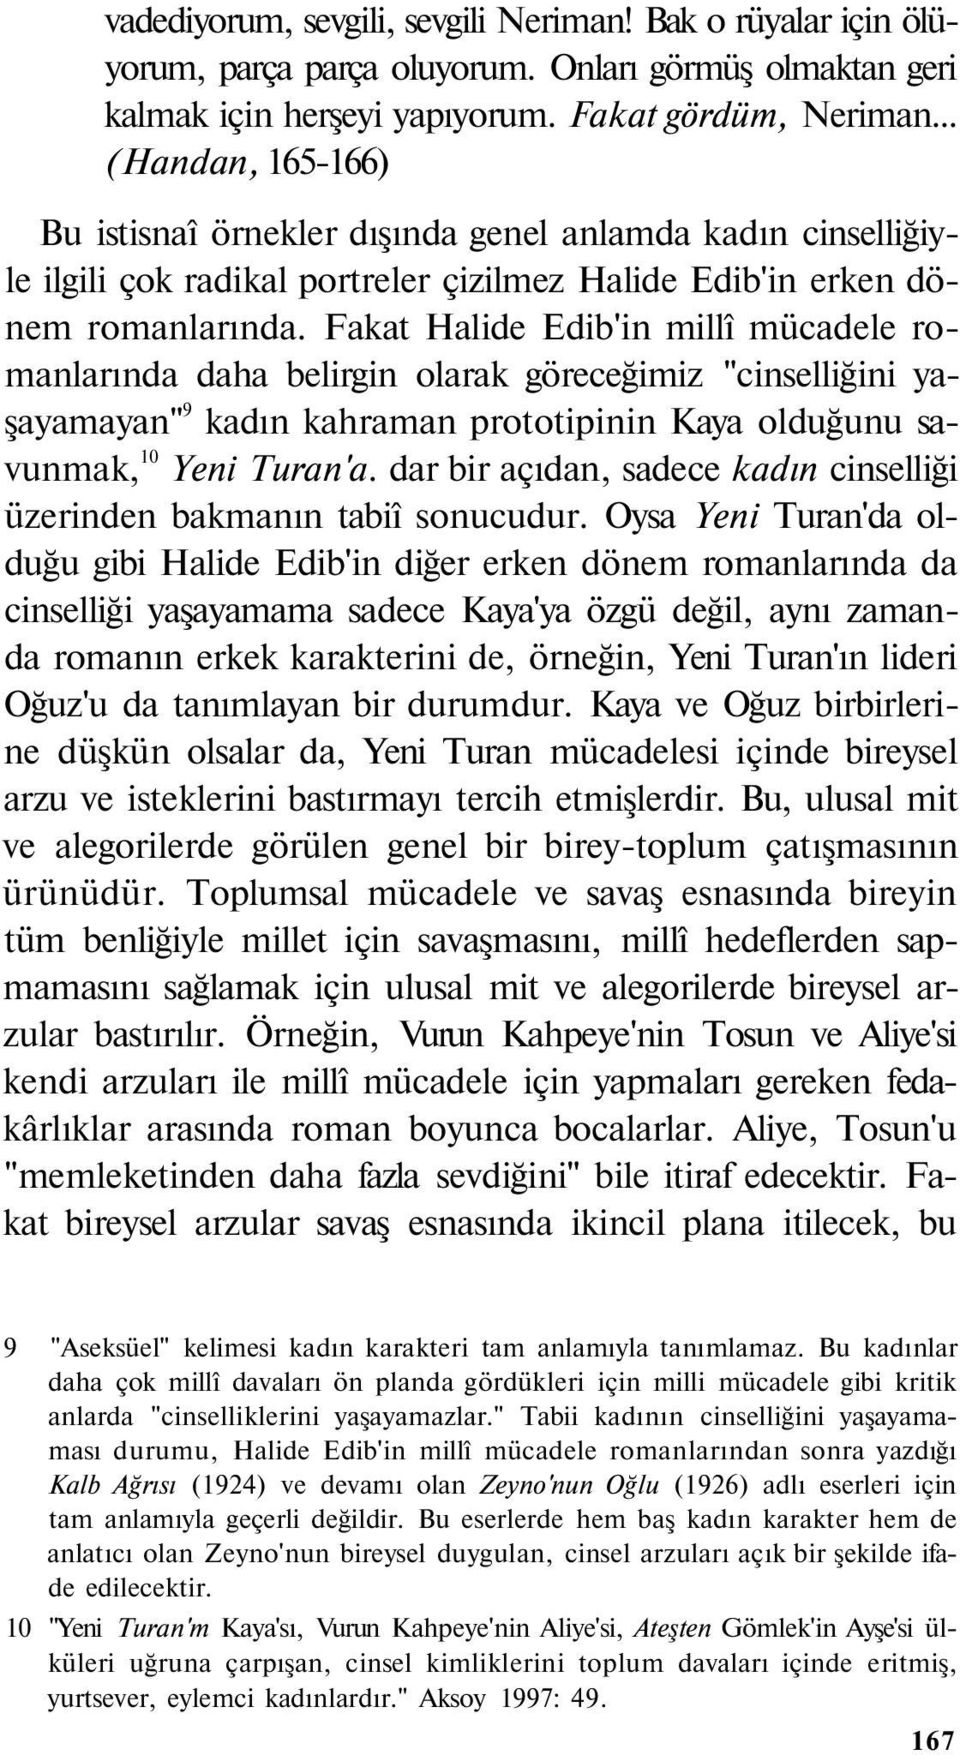 Fakat Halide Edib'in millî mücadele romanlarında daha belirgin olarak göreceğimiz "cinselliğini yaşayamayan" 9 kadın kahraman prototipinin Kaya olduğunu savunmak, 10 Yeni Turan'a.